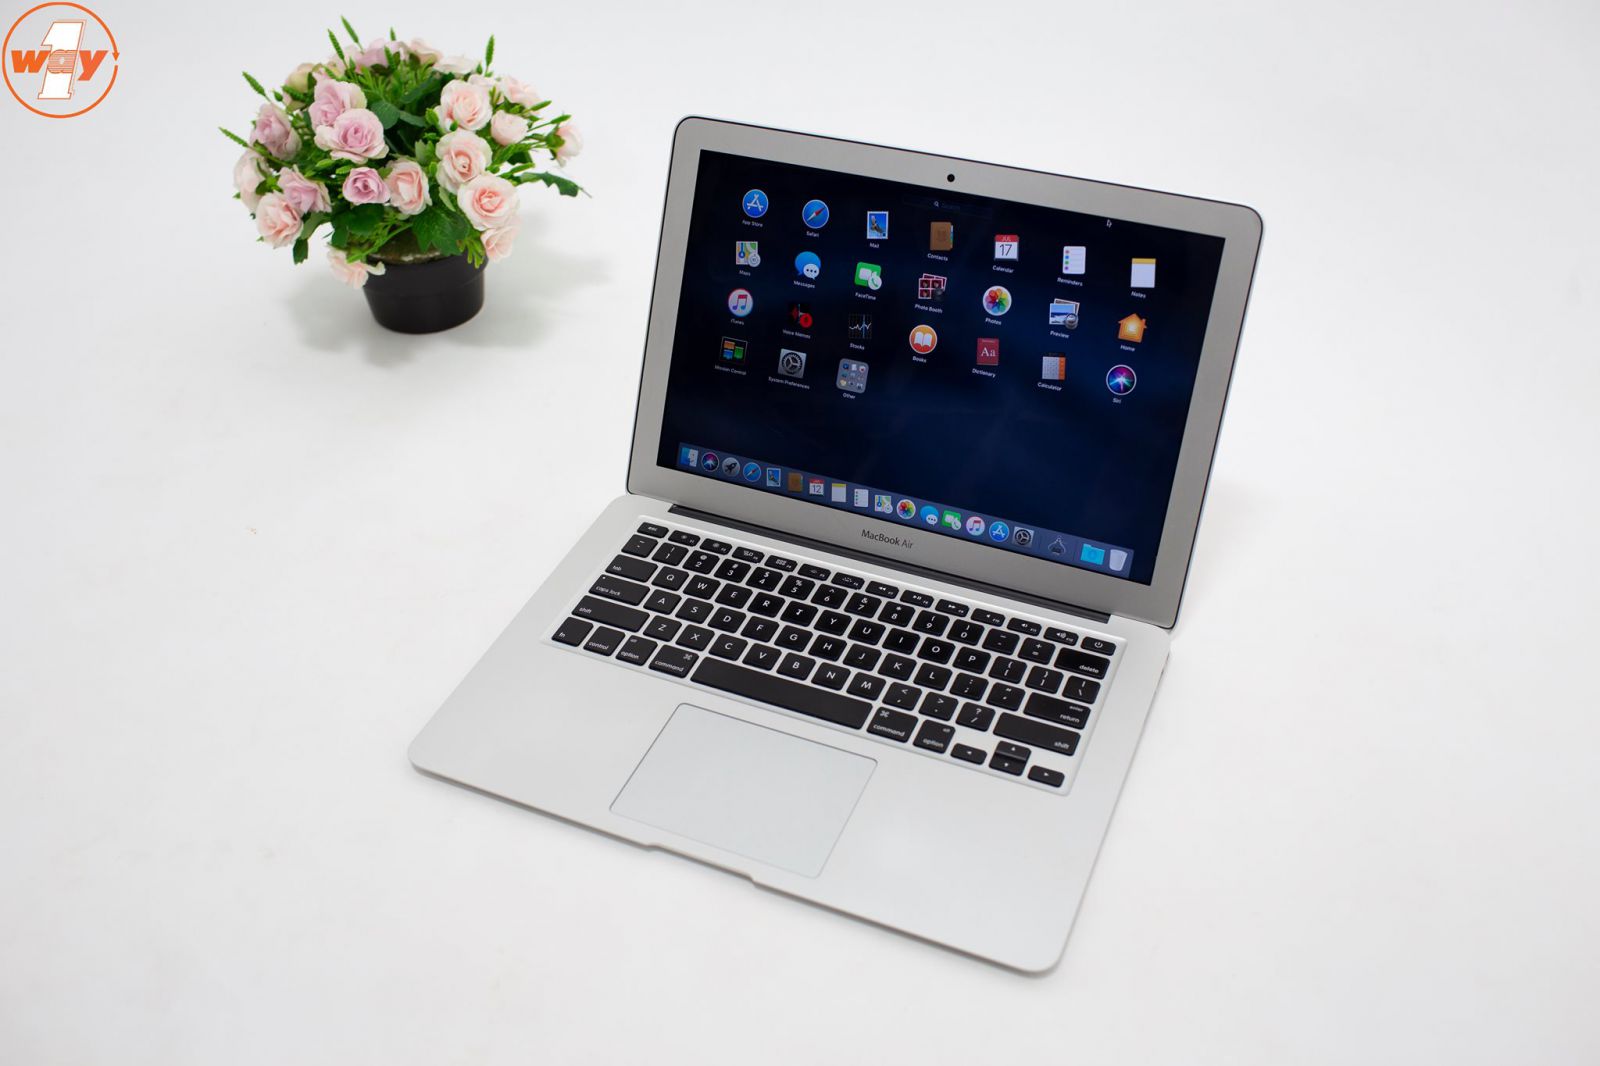 MacBook Air MMGF2 cũ sở hữu thiết kế nhỏ gọn, tinh tế